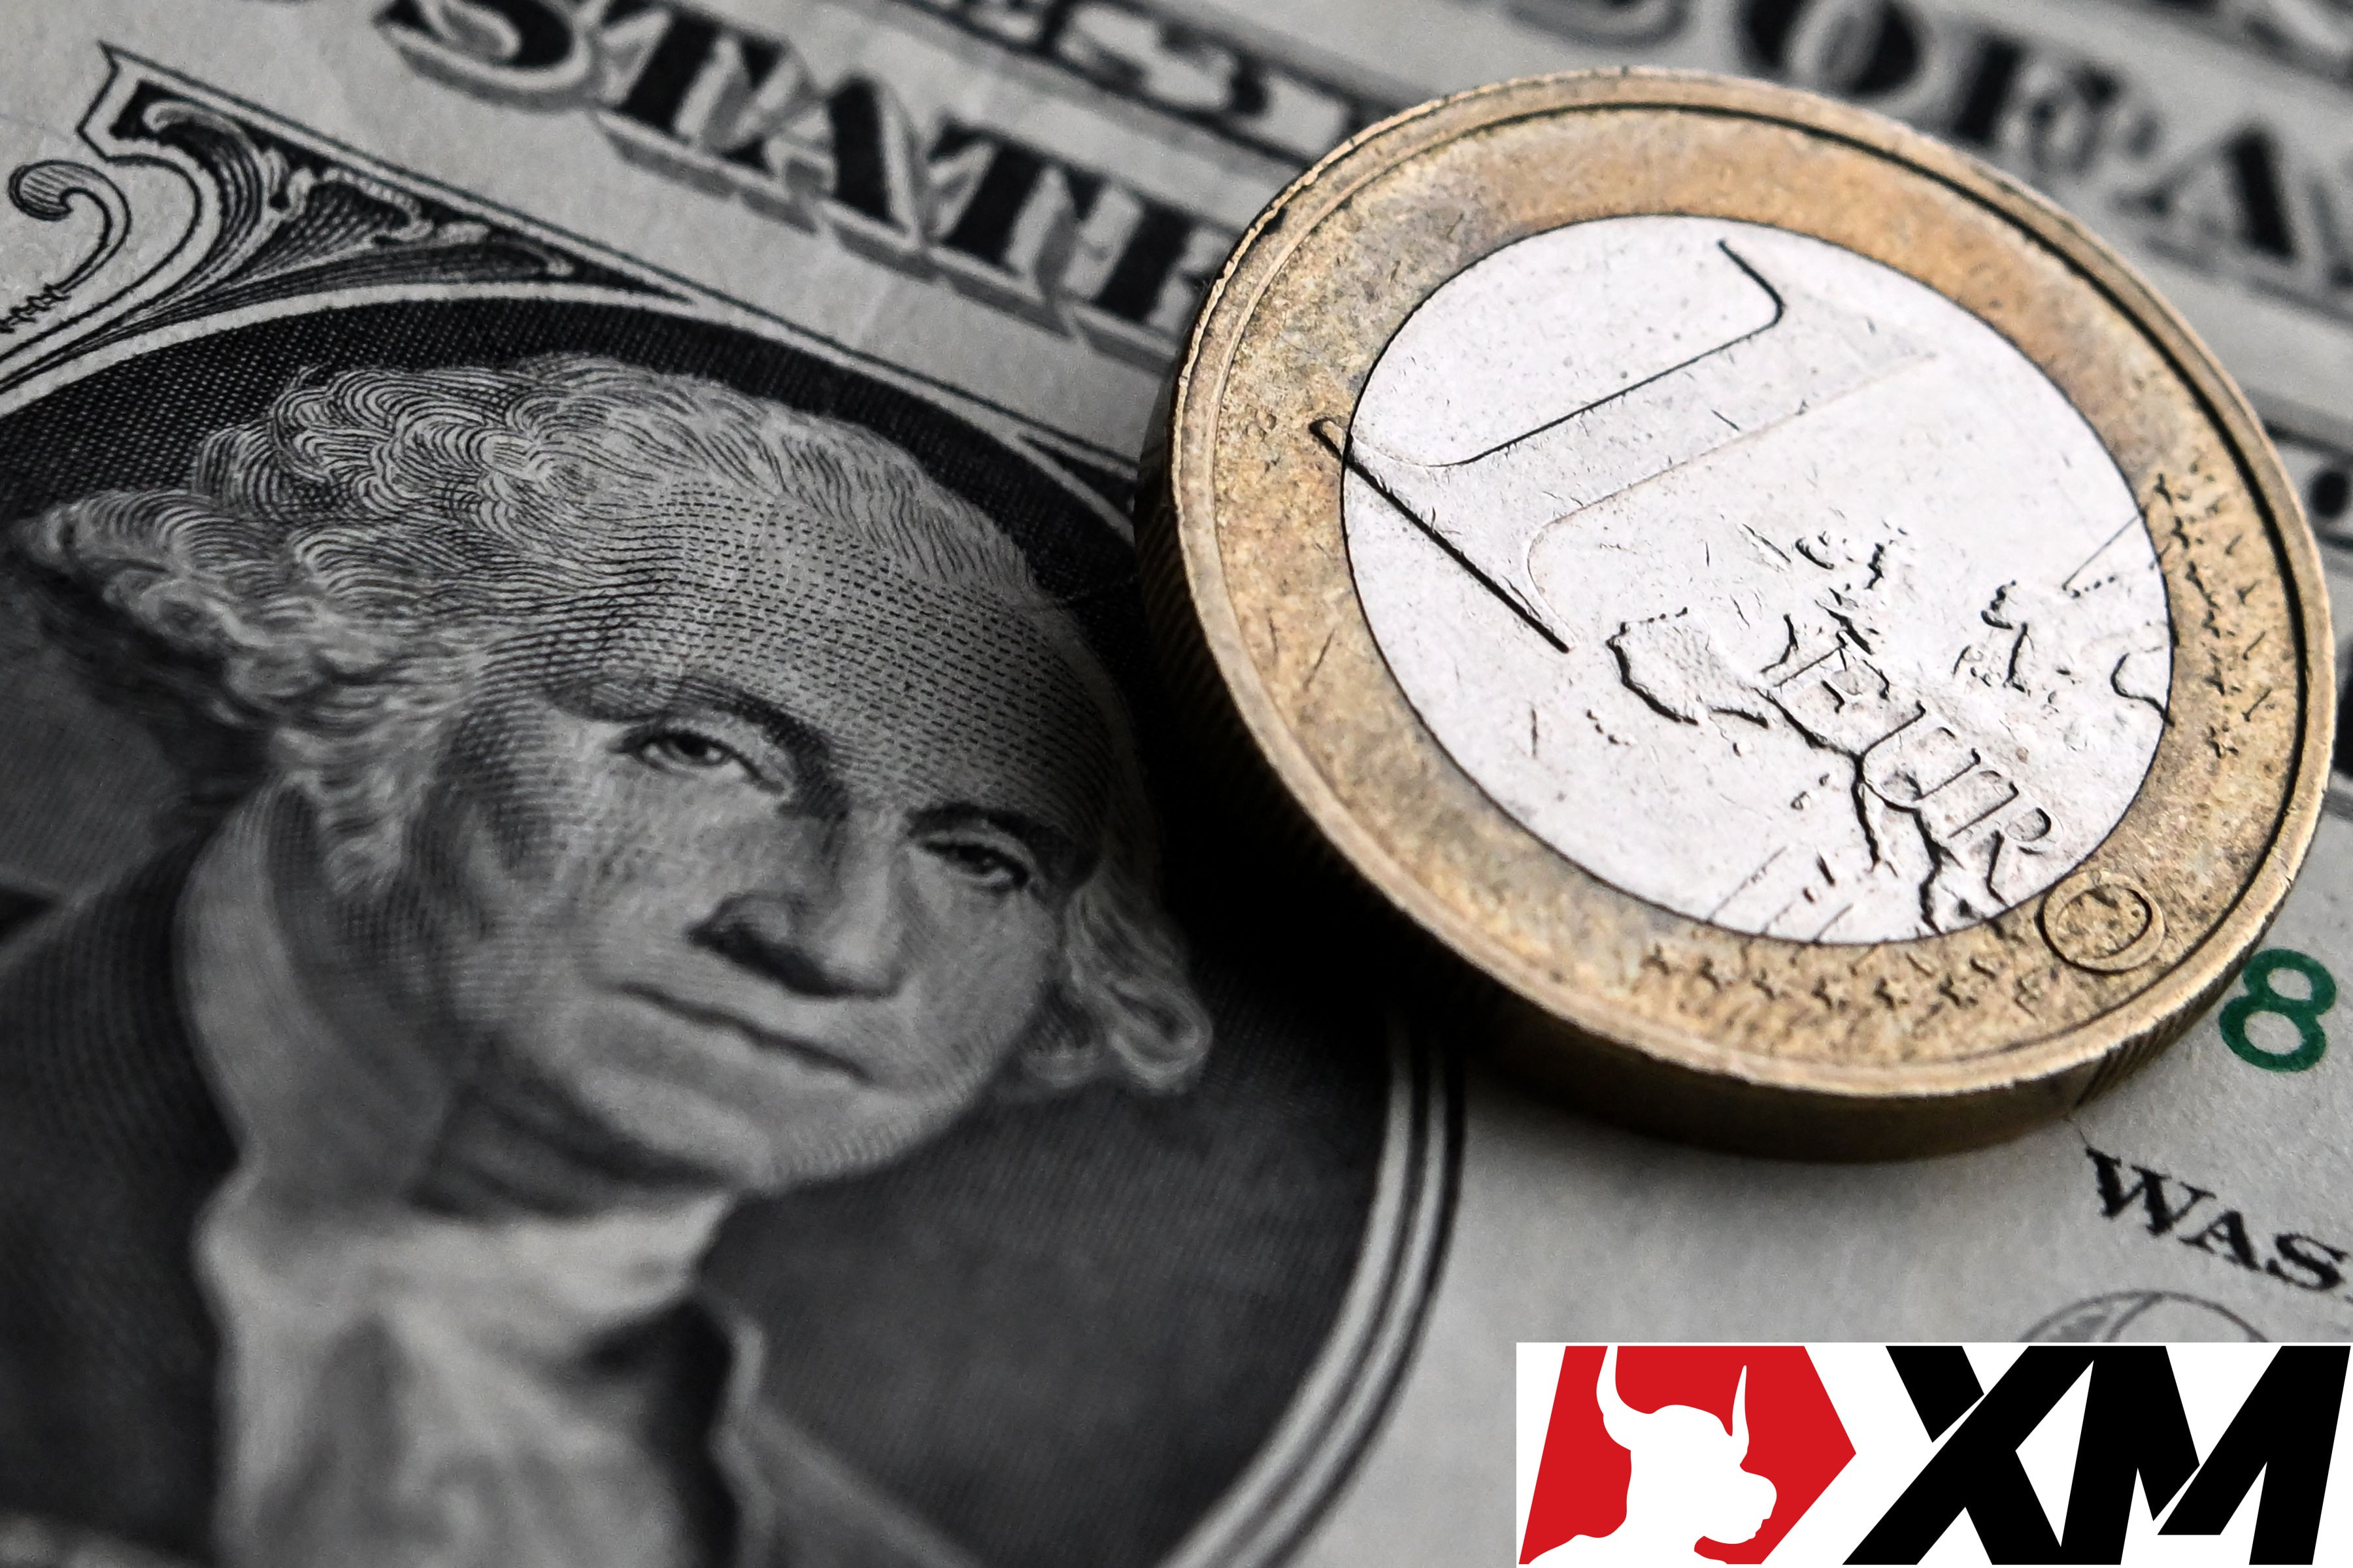 Bloomberg Opinion: Triển vọng 1 đồng EUR đổi được 1 USD hoàn toàn có thể xảy ra trong năm nay